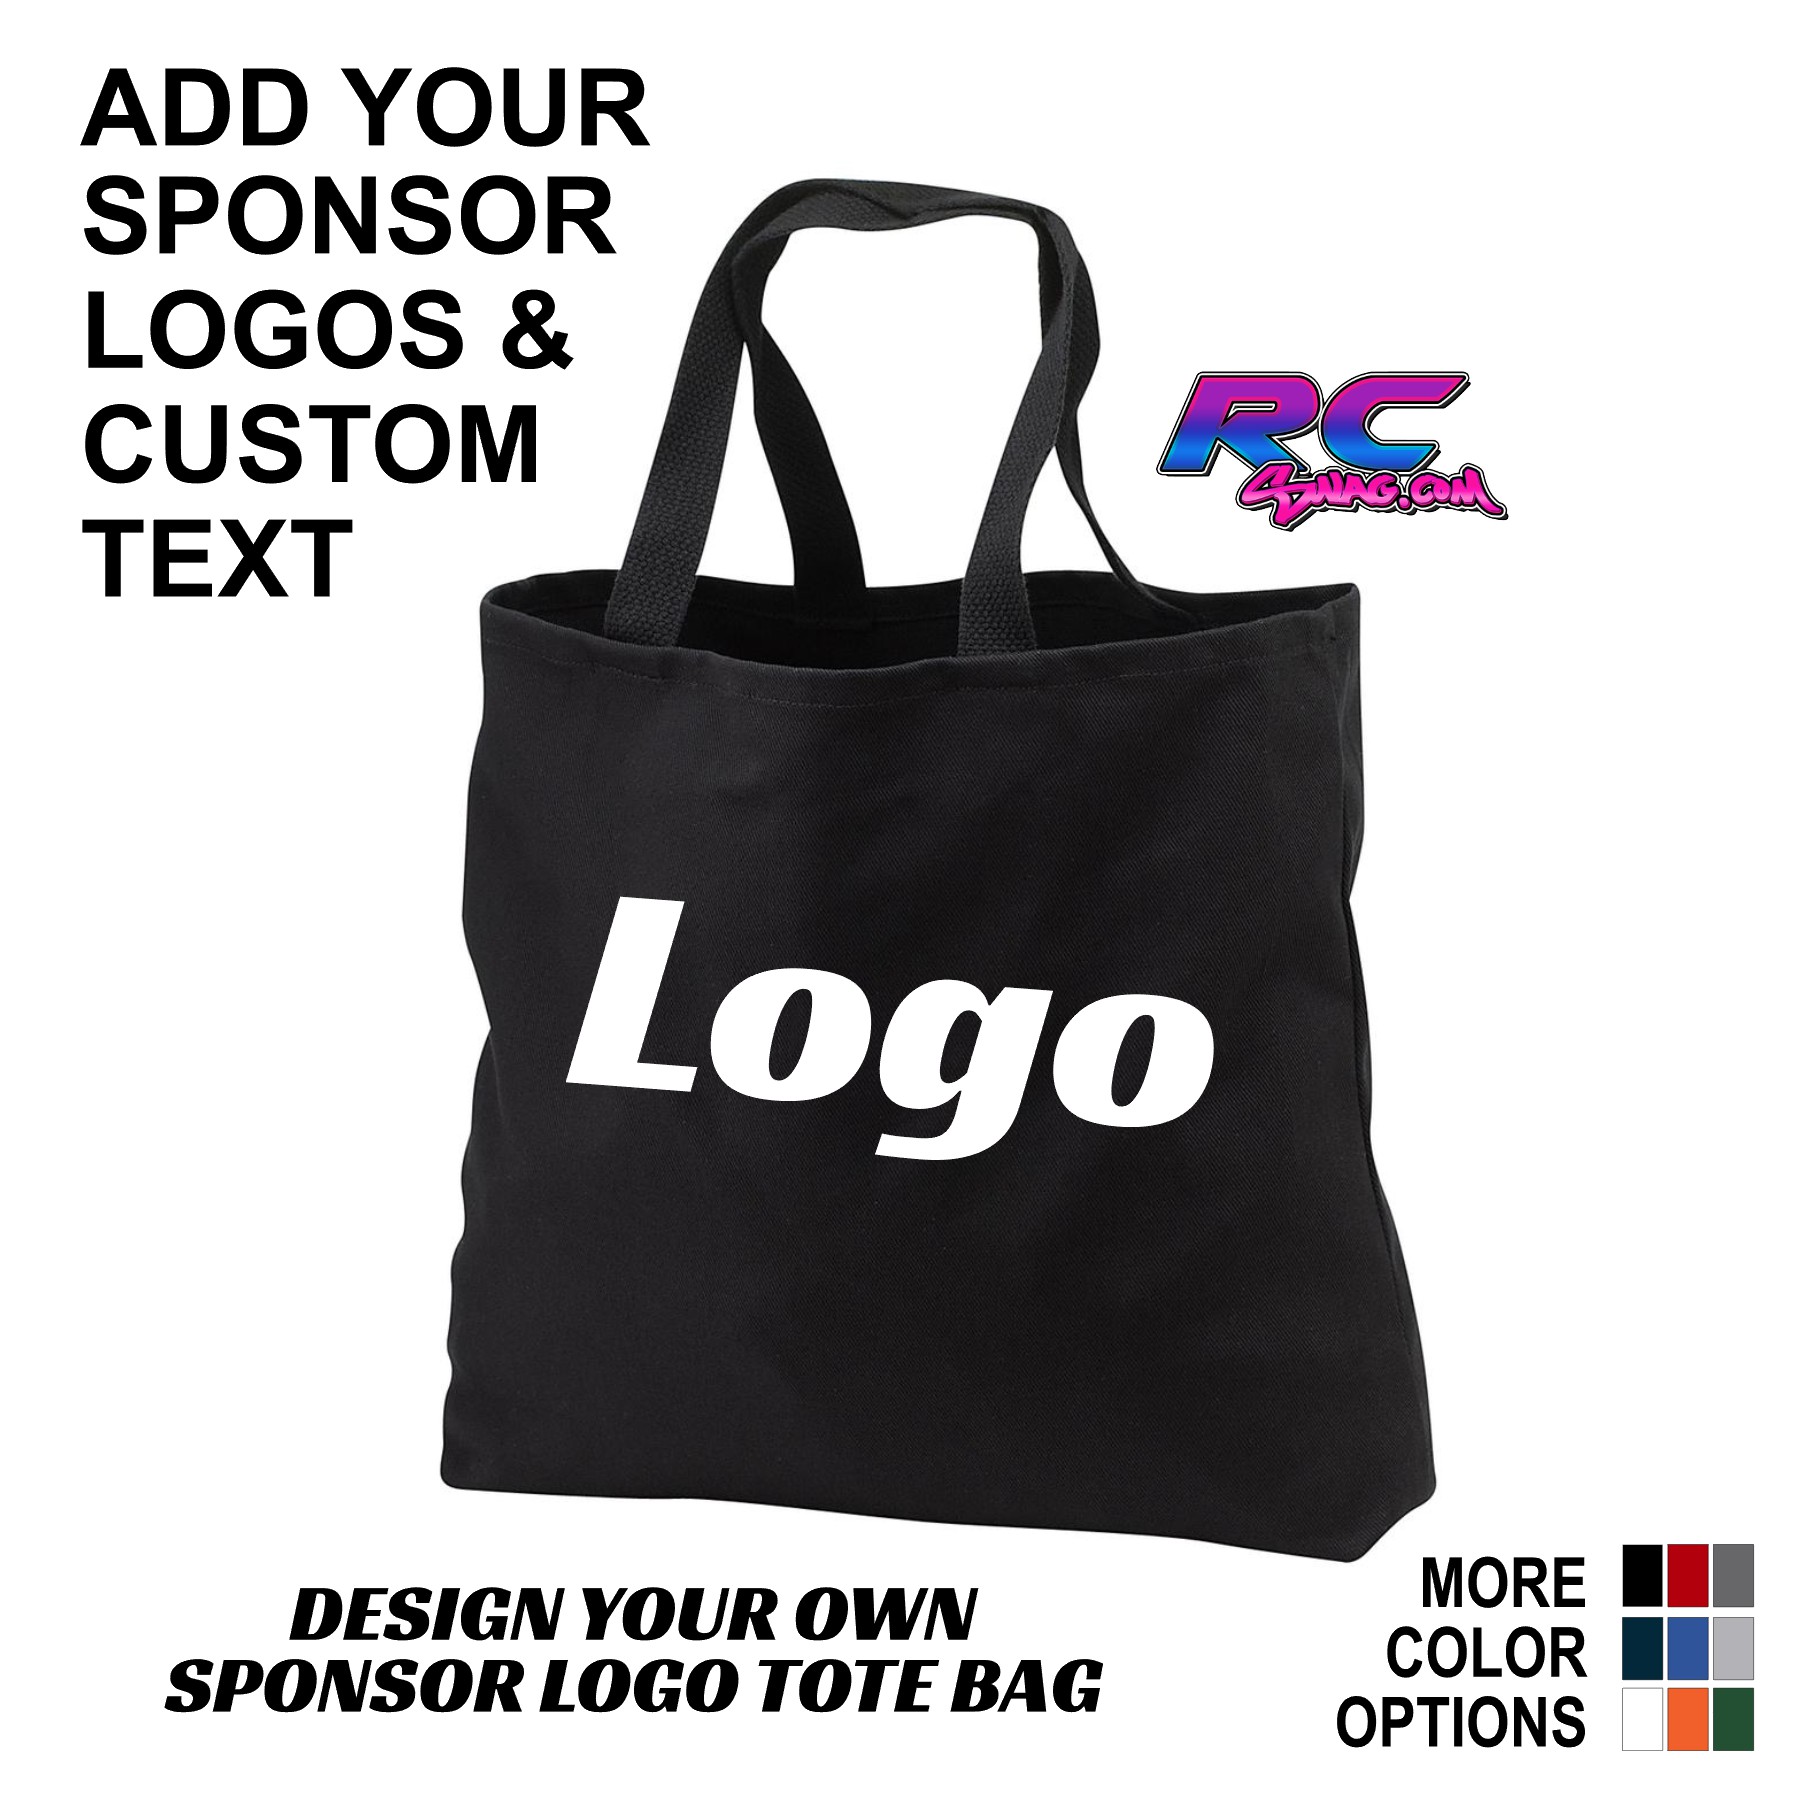 Bag Logos